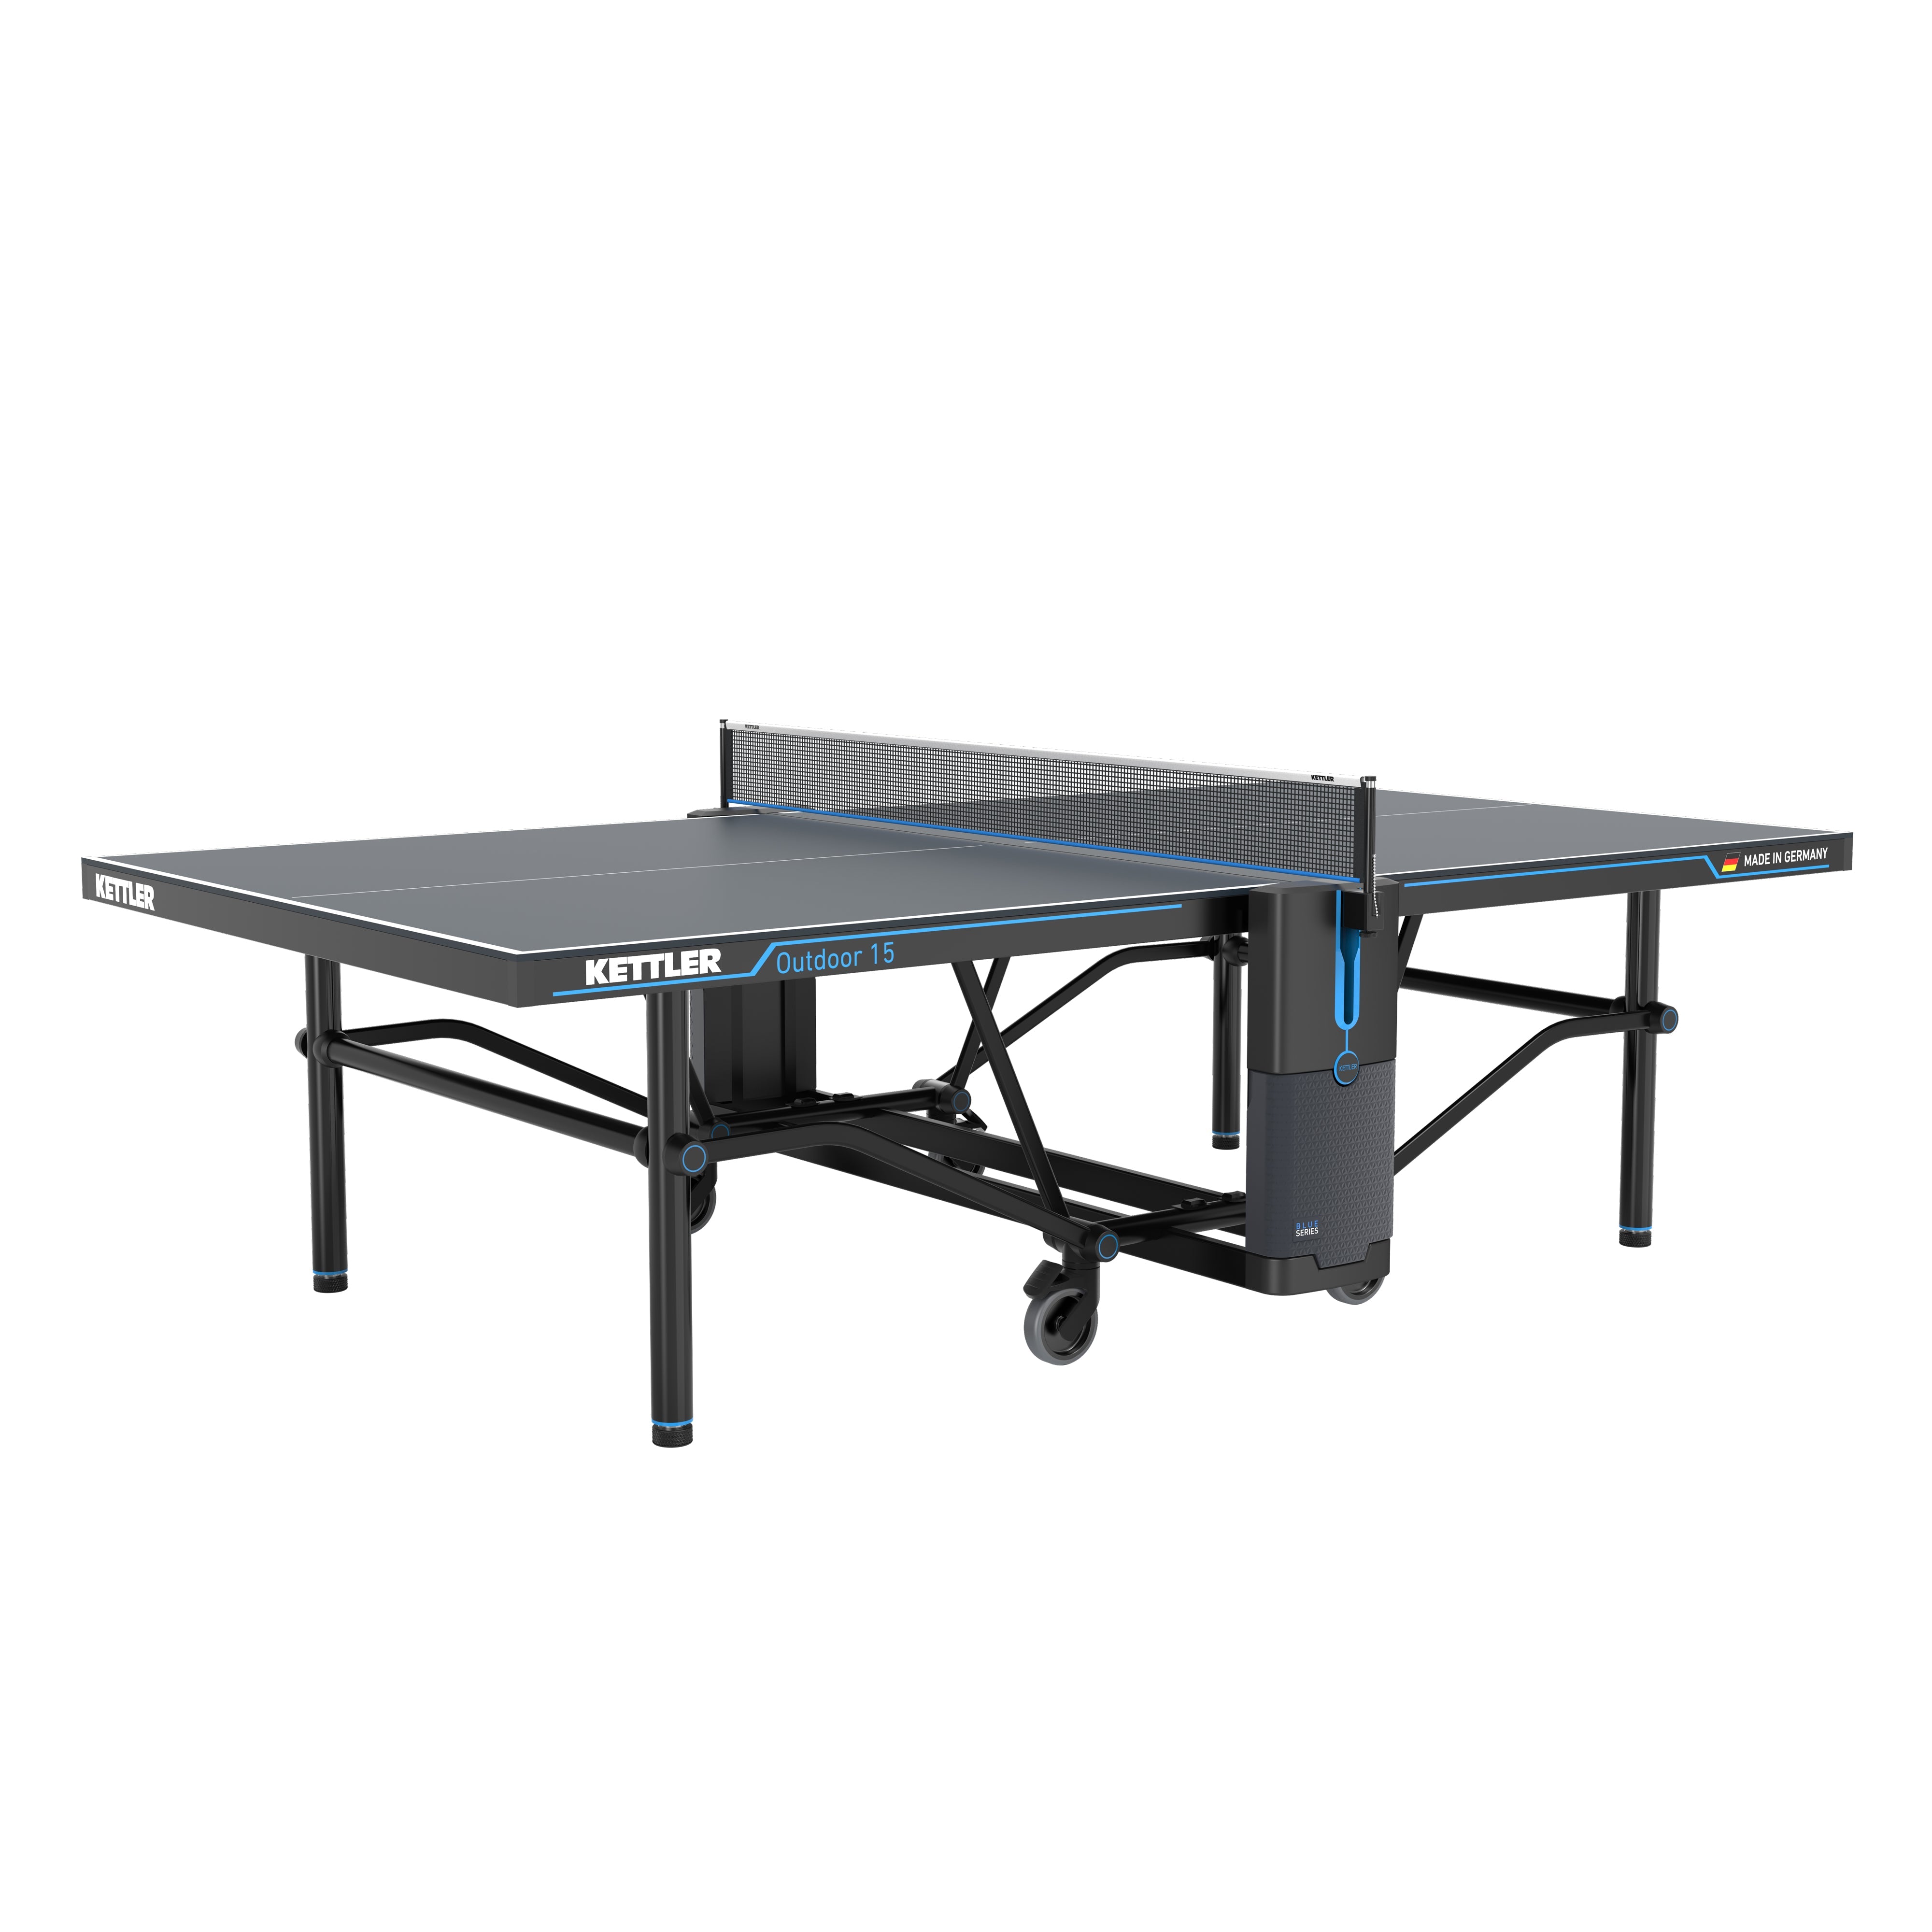 Table ping pong extérieur en béton Rondo